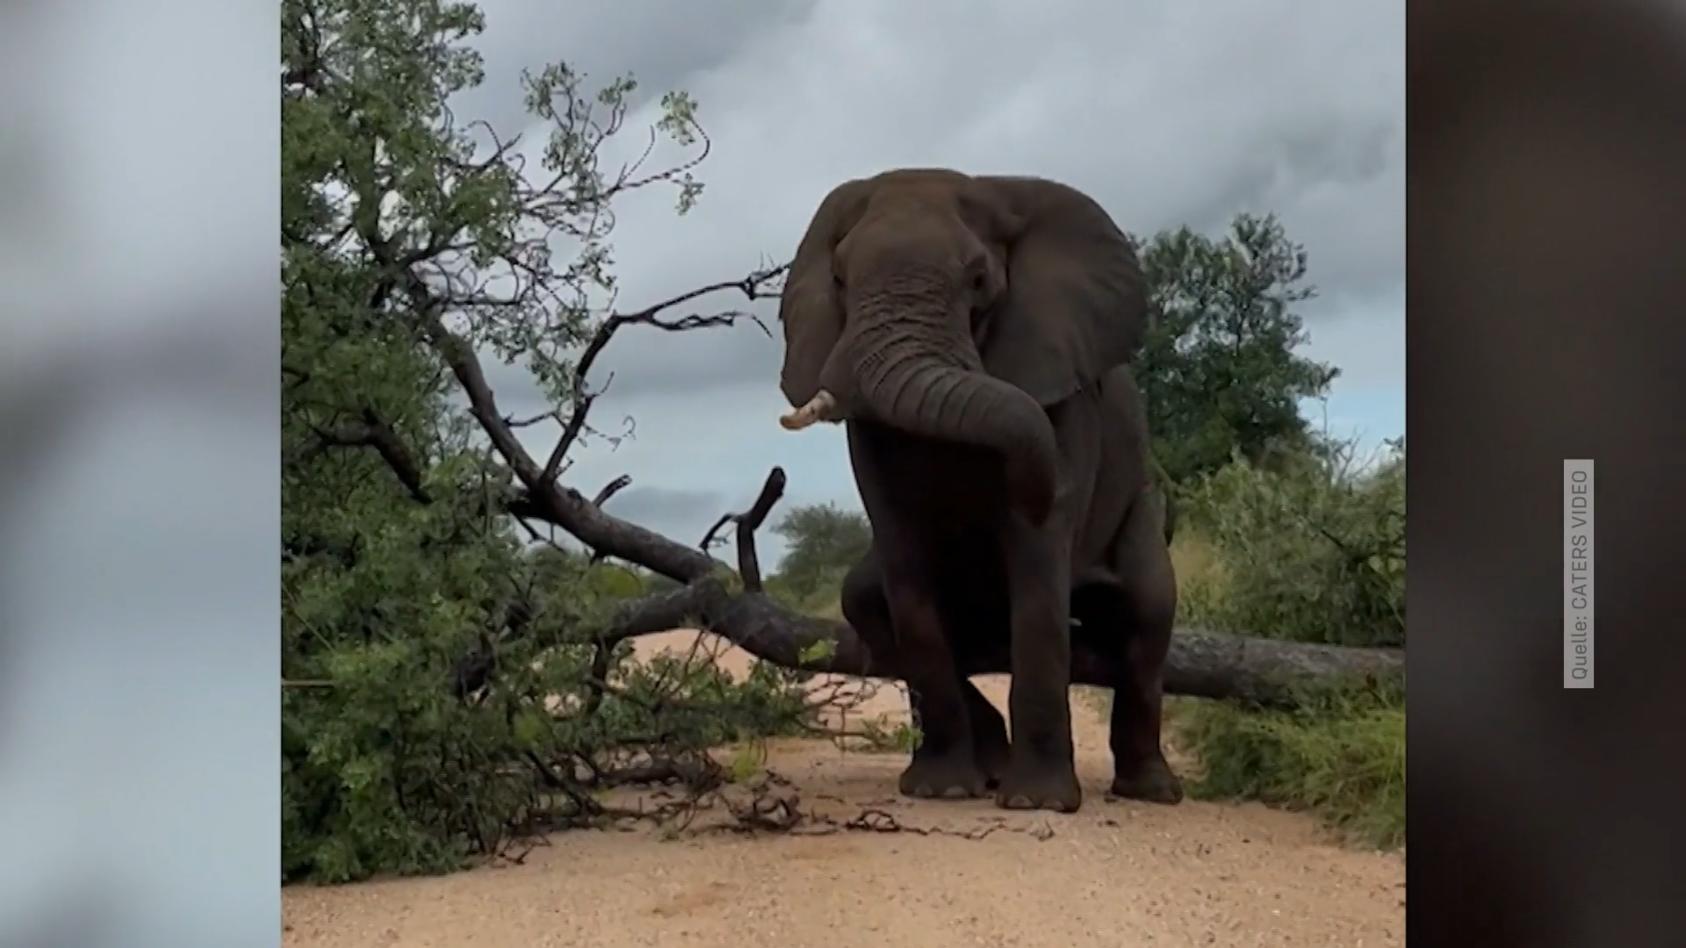 Elefant juckt der Po - da geht der Kratzbaum k.o. Auch ein Elefant braucht Hilfsmittel